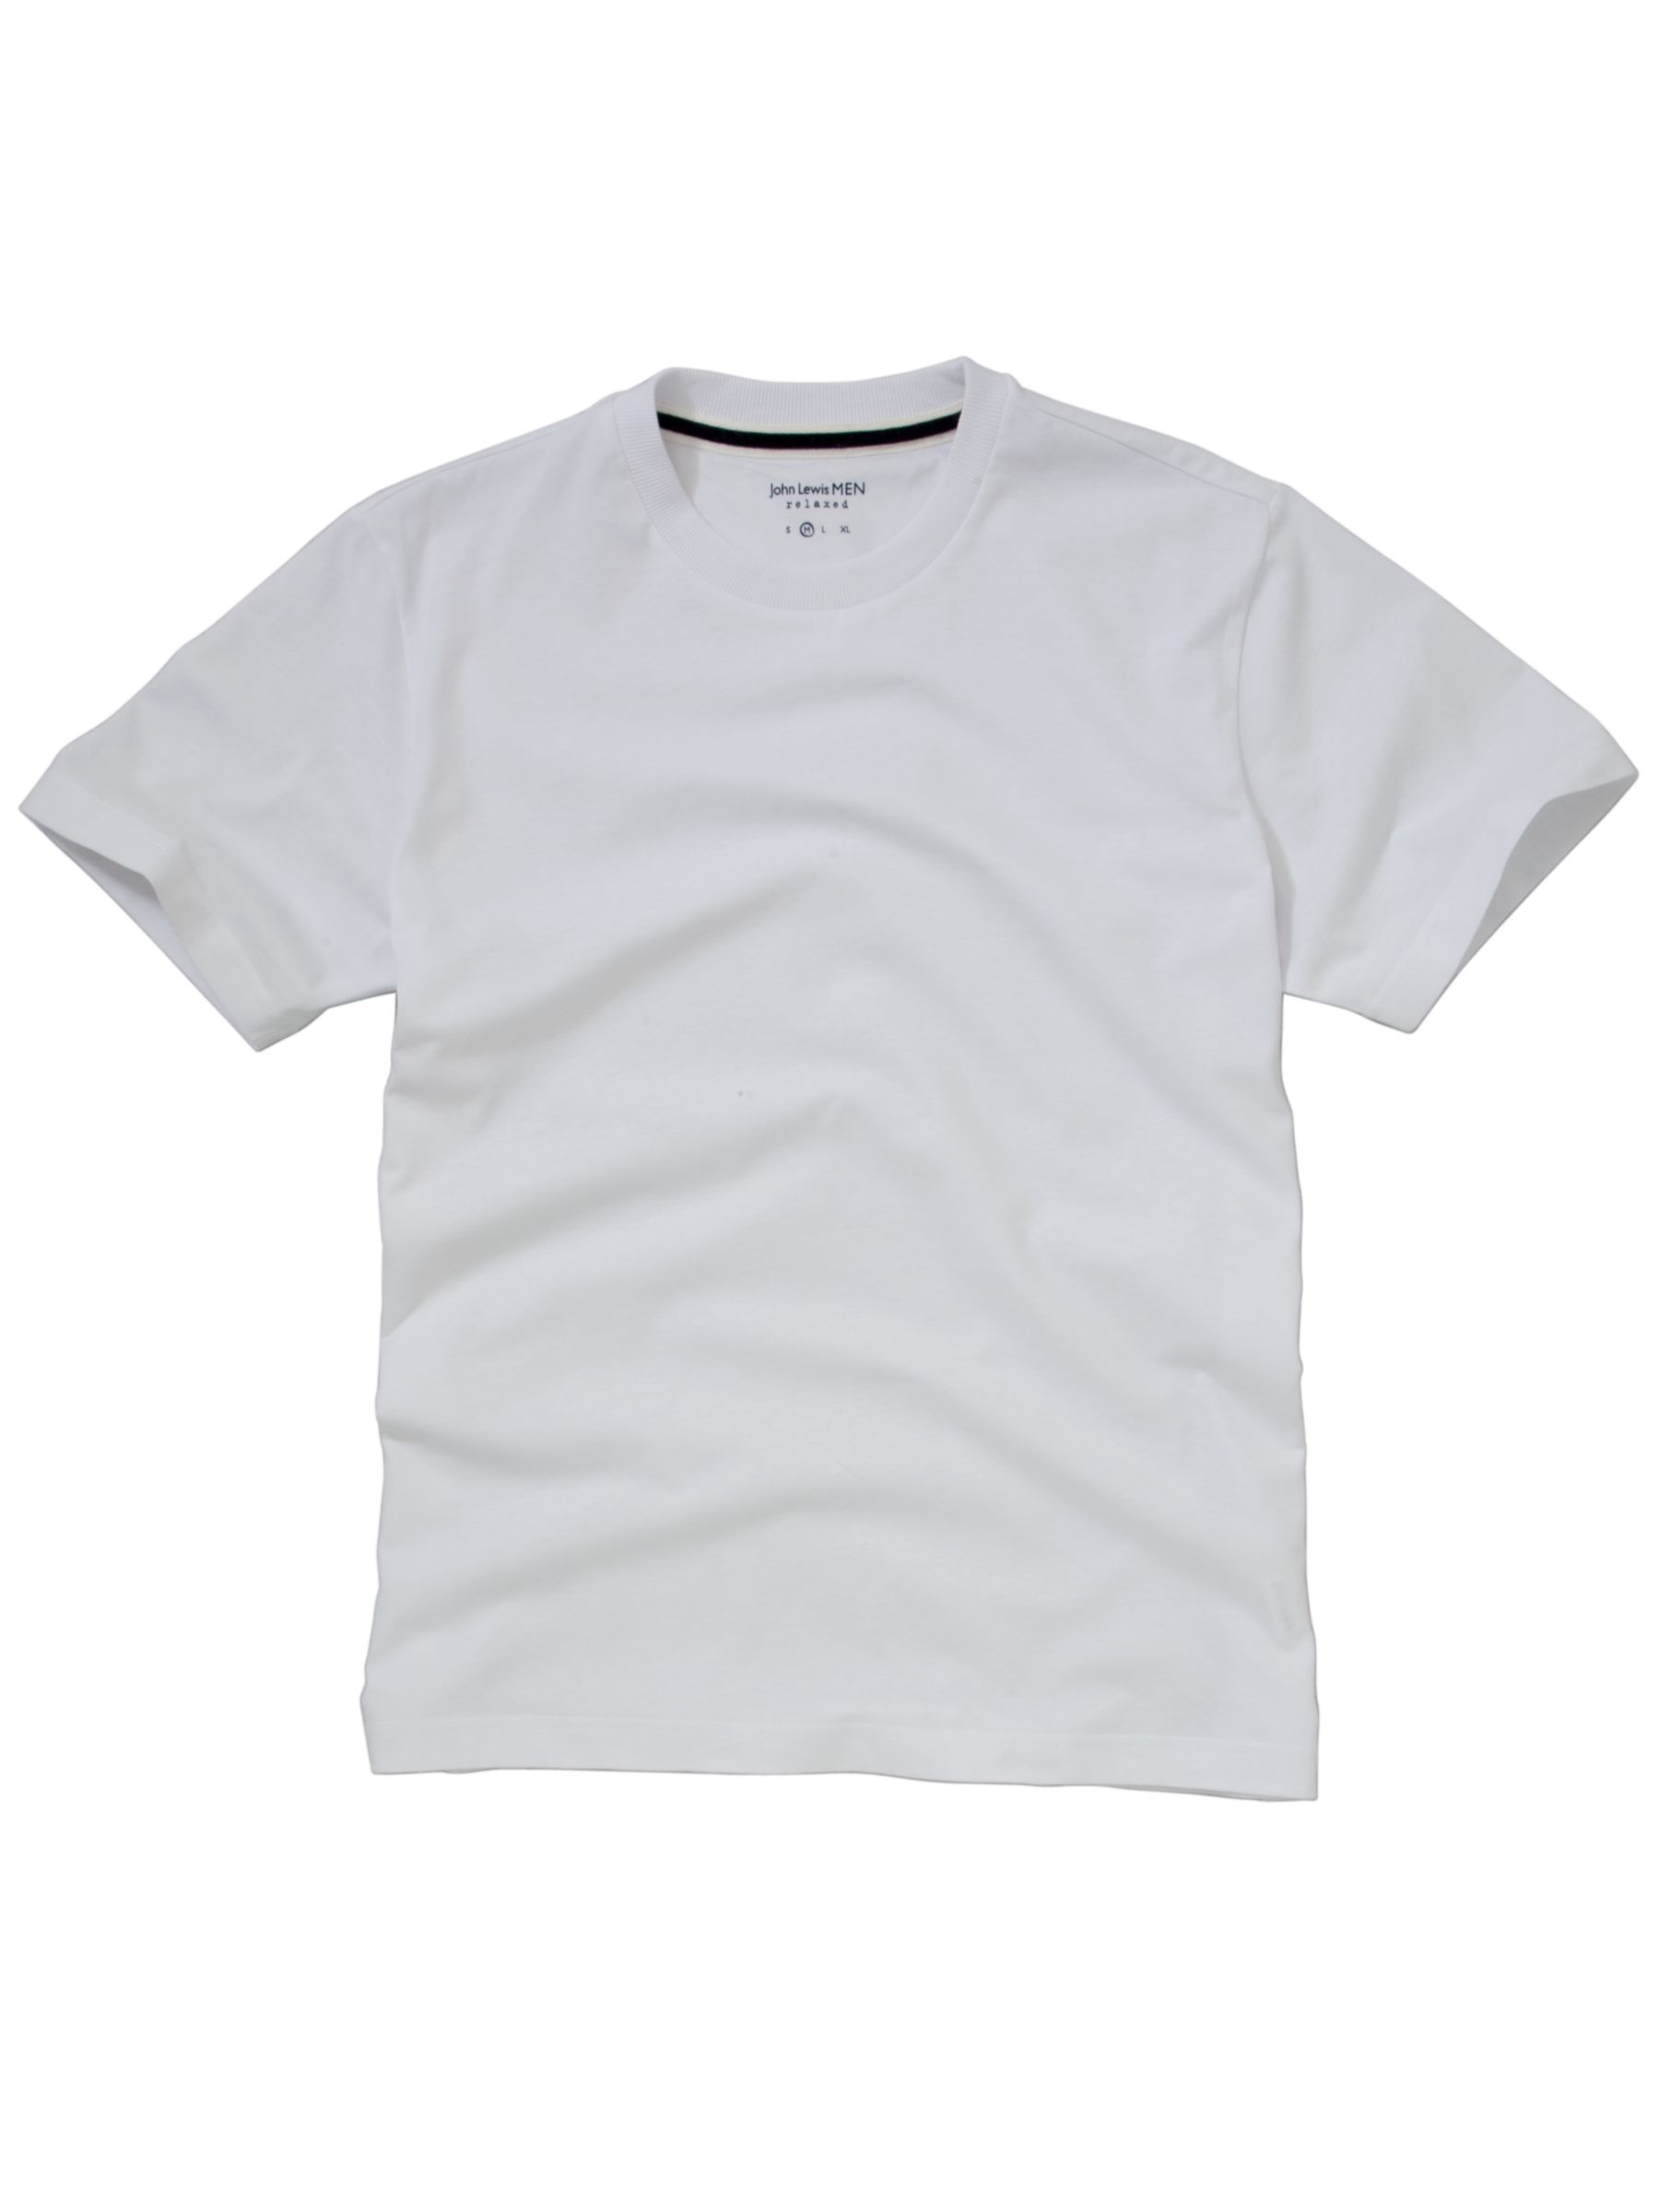 John Lewis Sueded Cotton Loungewear T-Shirt, White